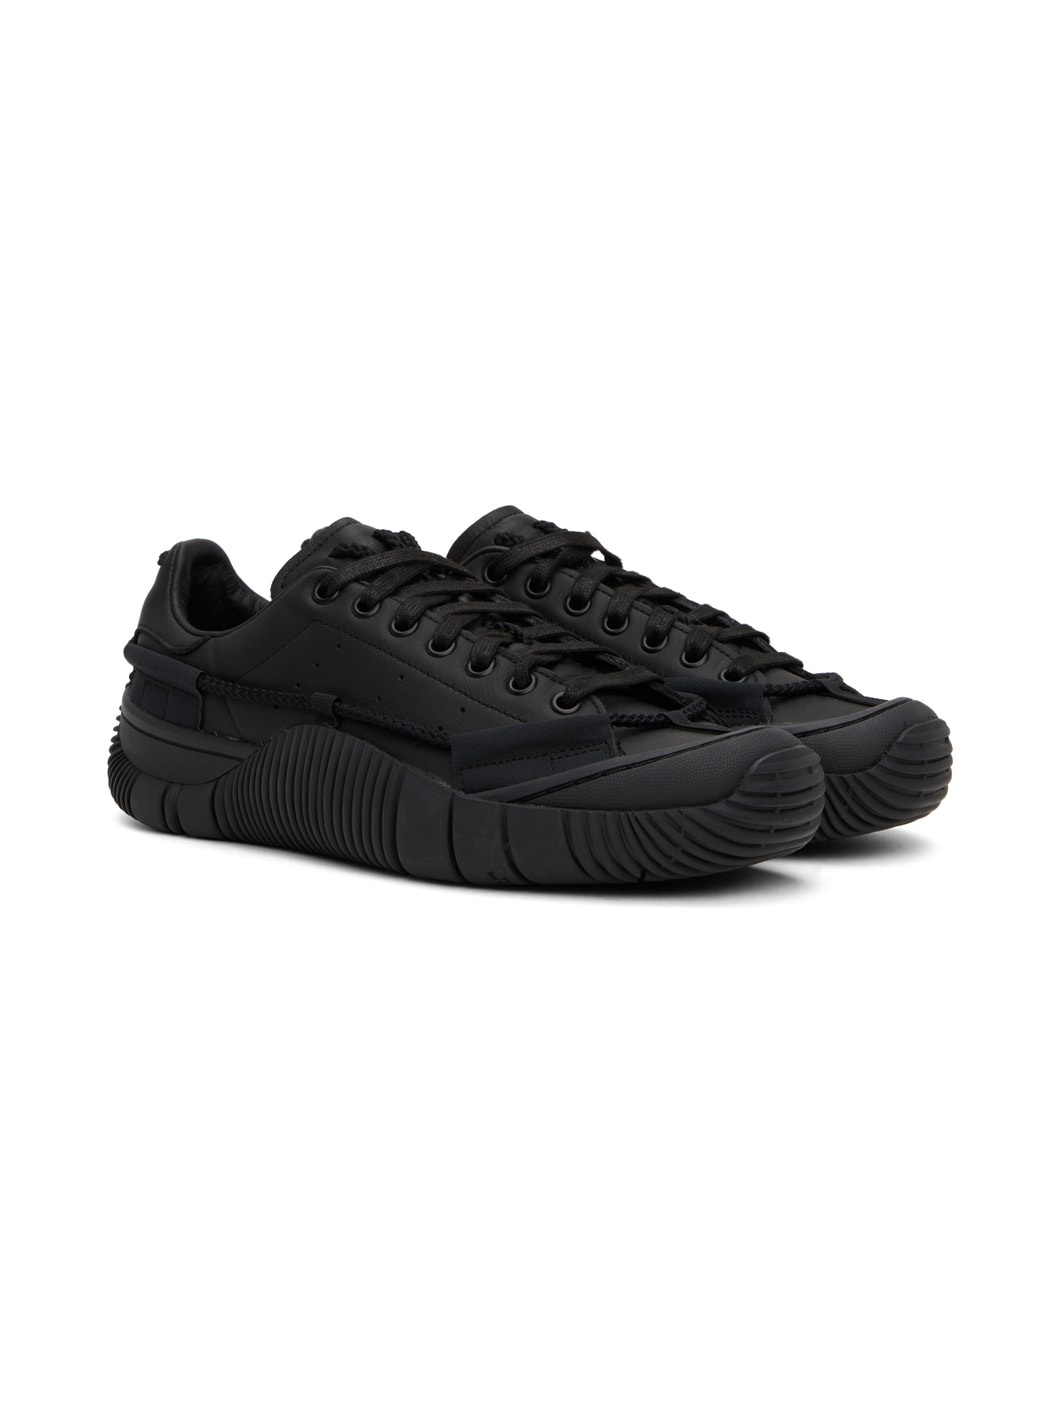 Black adidas Originals Edition Scuba Stan Smith Sneakers - 4